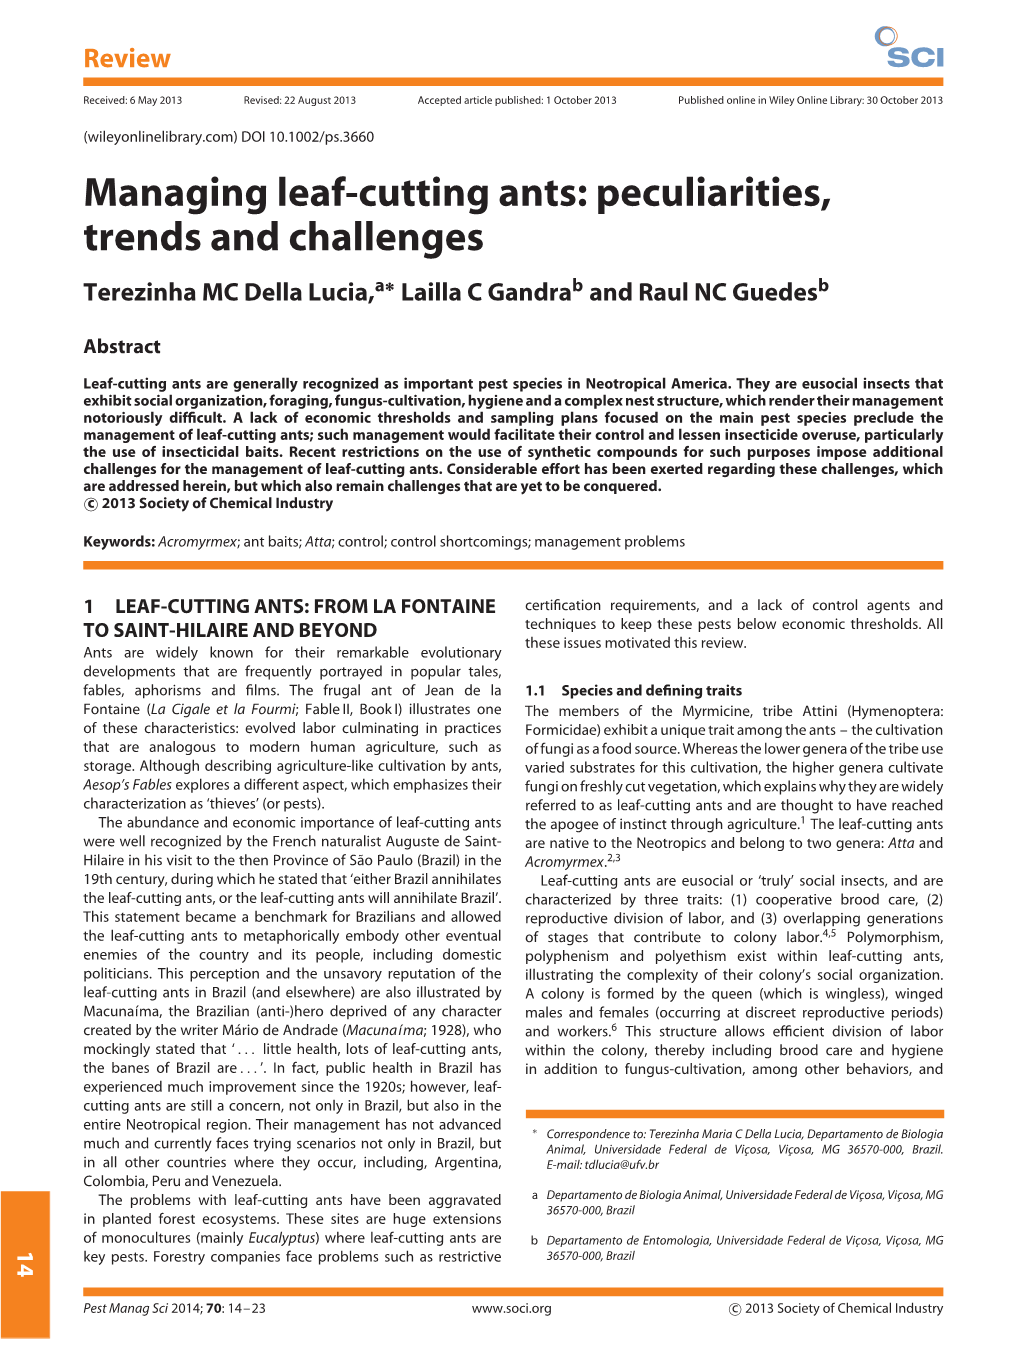 Managing Leaf-Cutting Ants